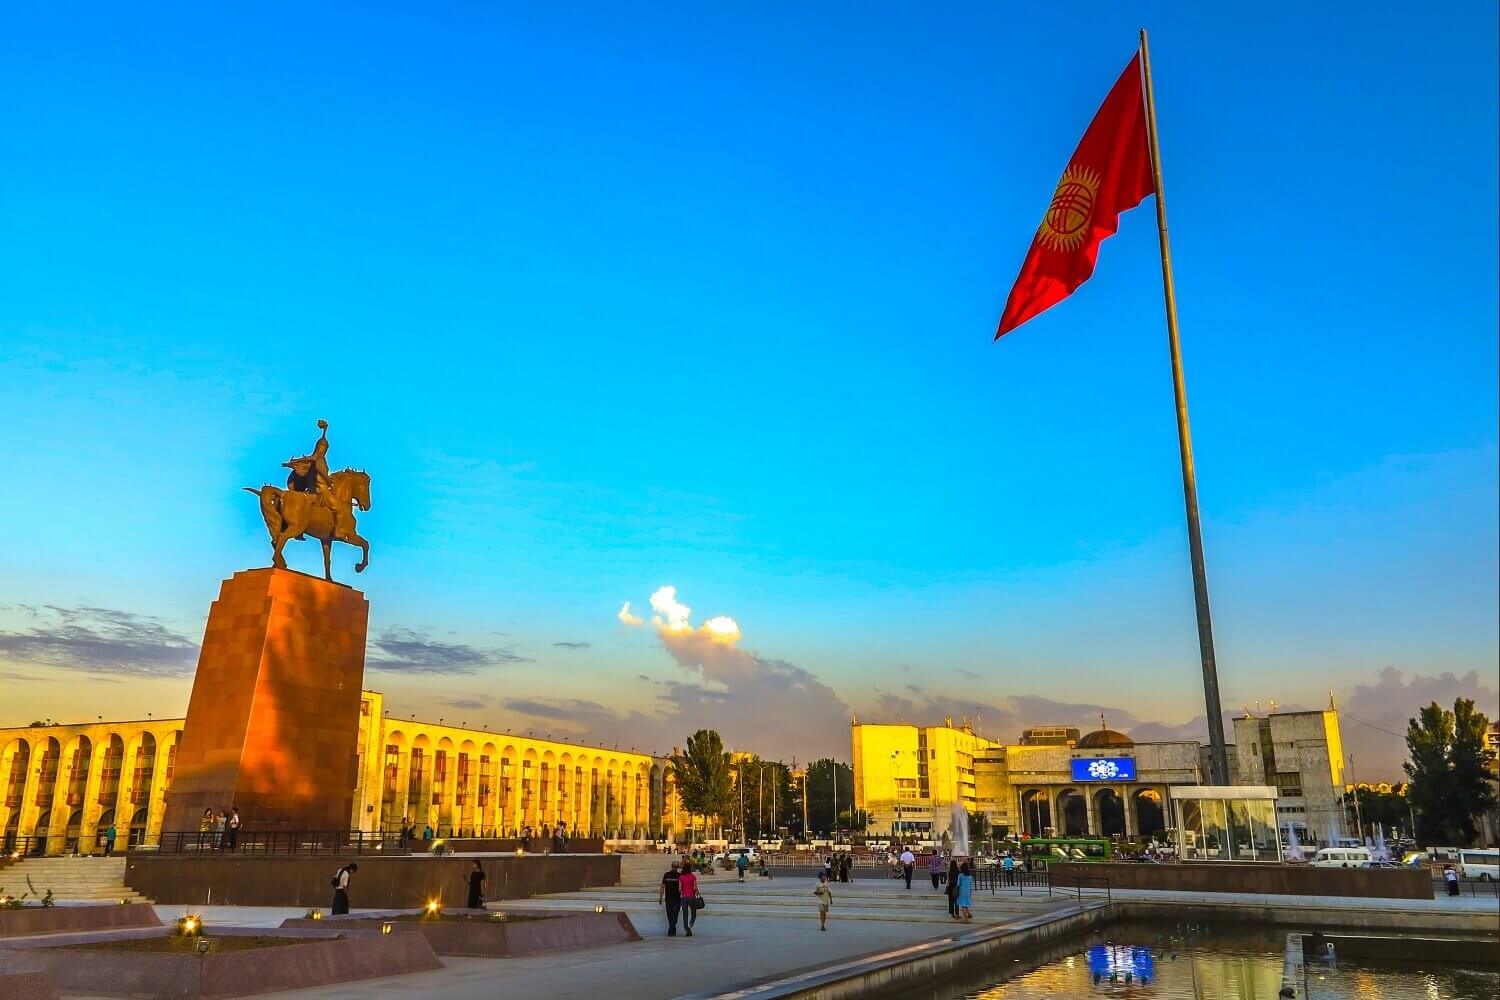 Ala-Too Square in Bishkek